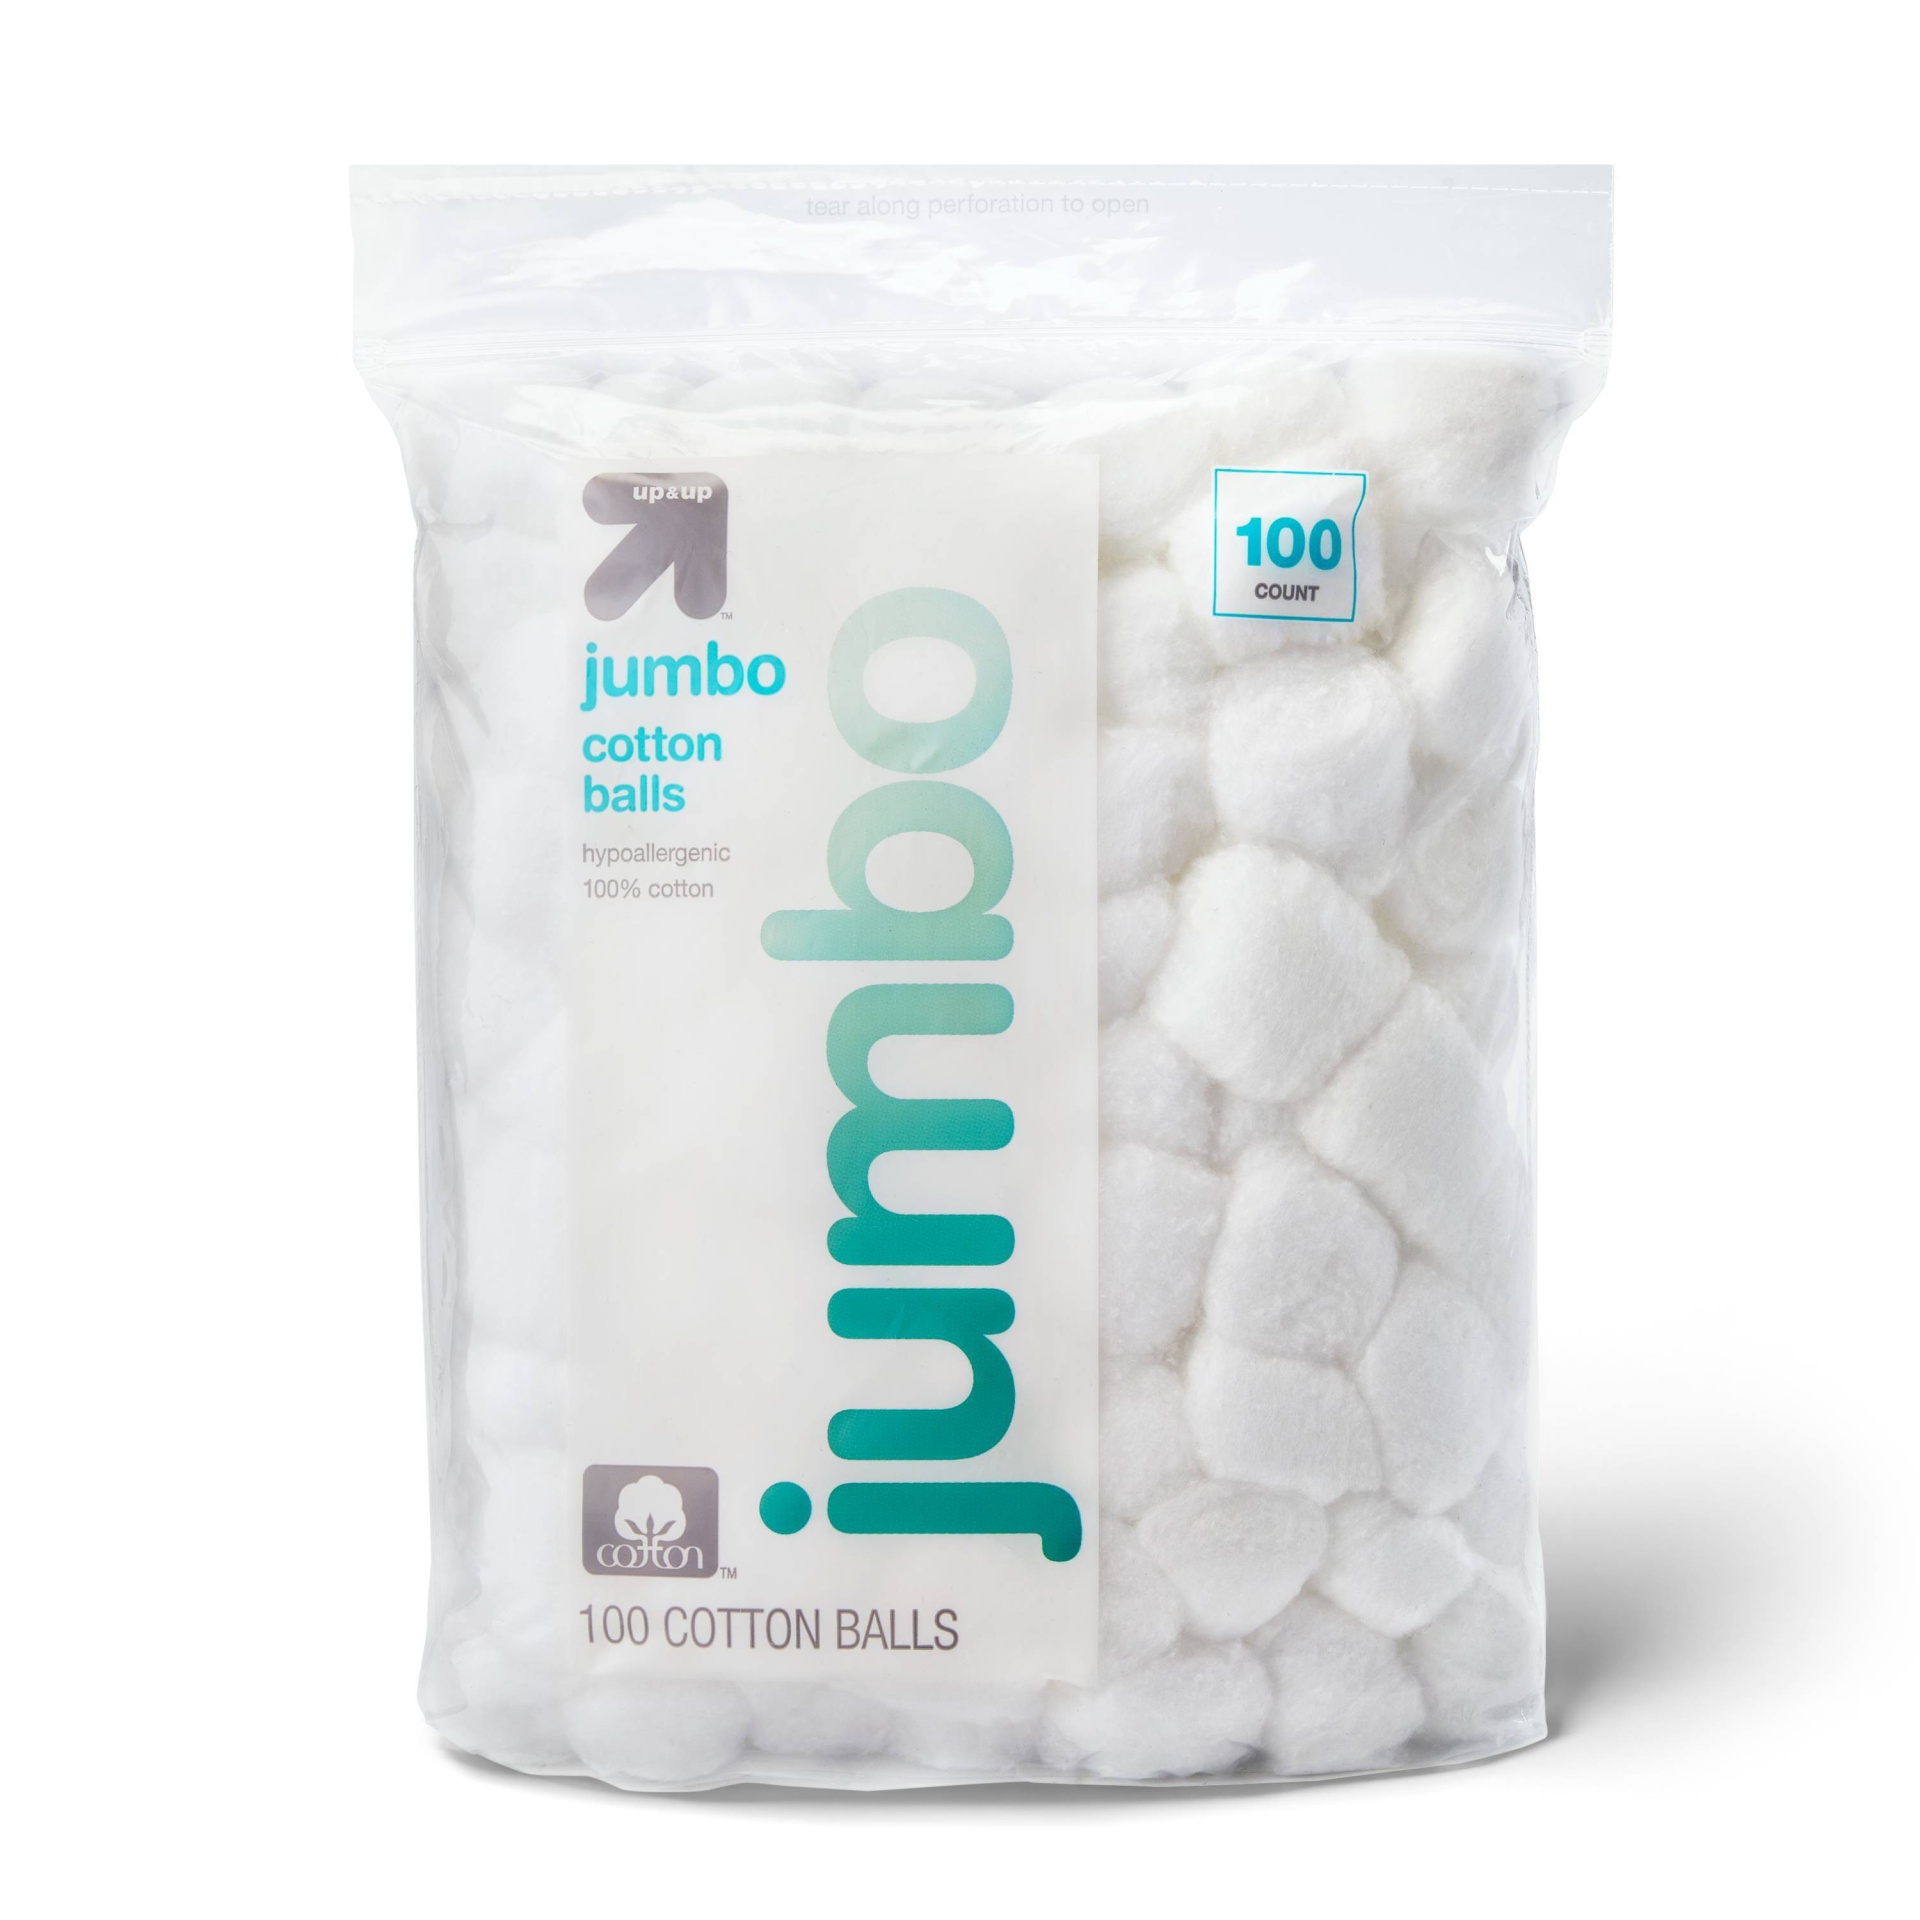 Jumbo Cotton Balls - 100ct - up & up 100 ct